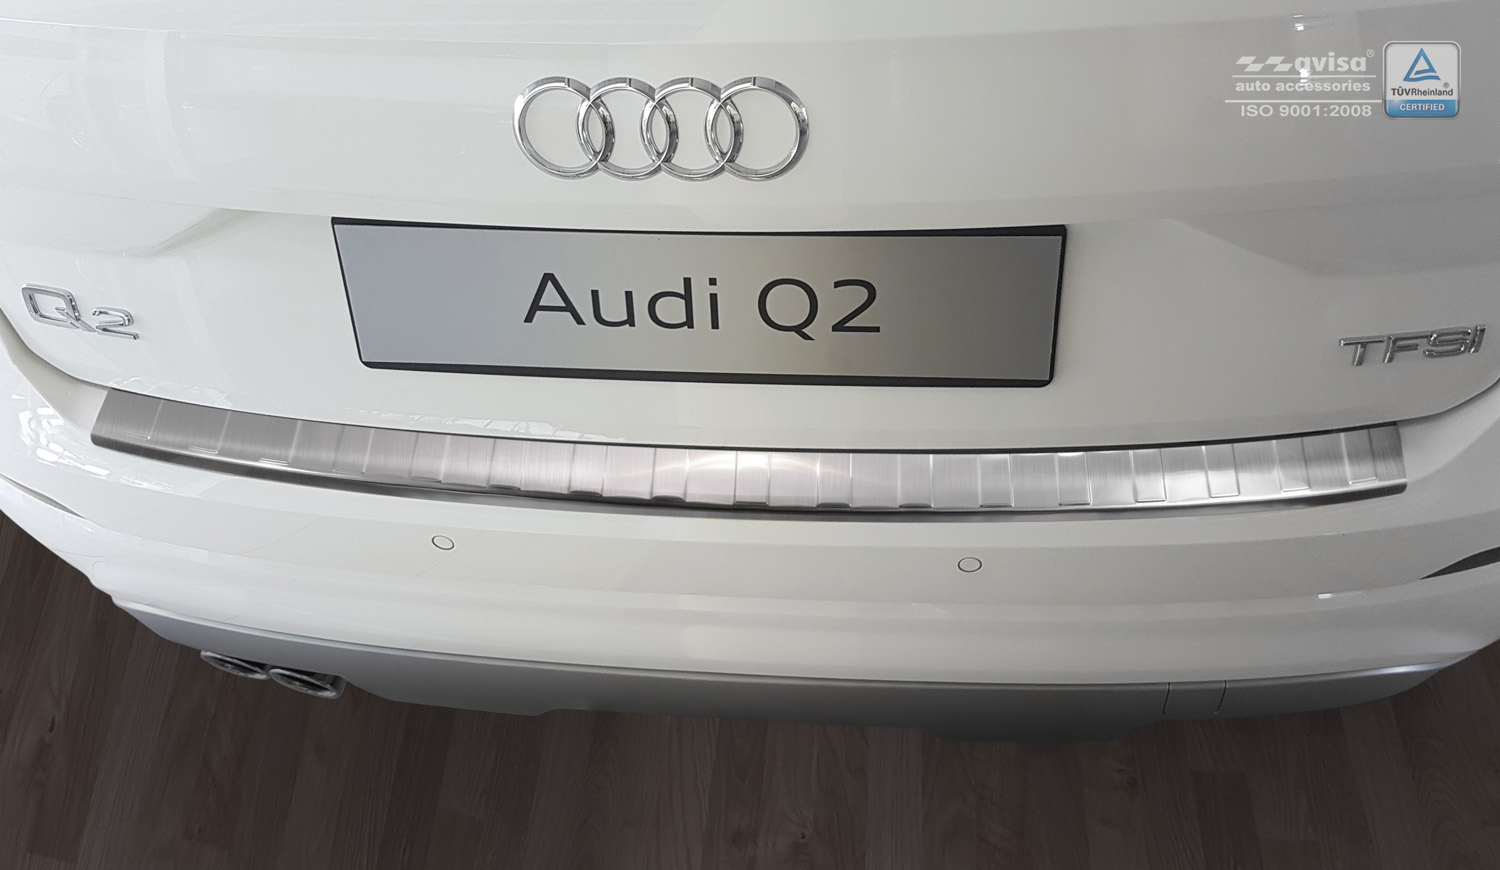 Ladekantenschutz für Audi Q2 - Schutz für die Ladekante Ihres Fahrzeuges